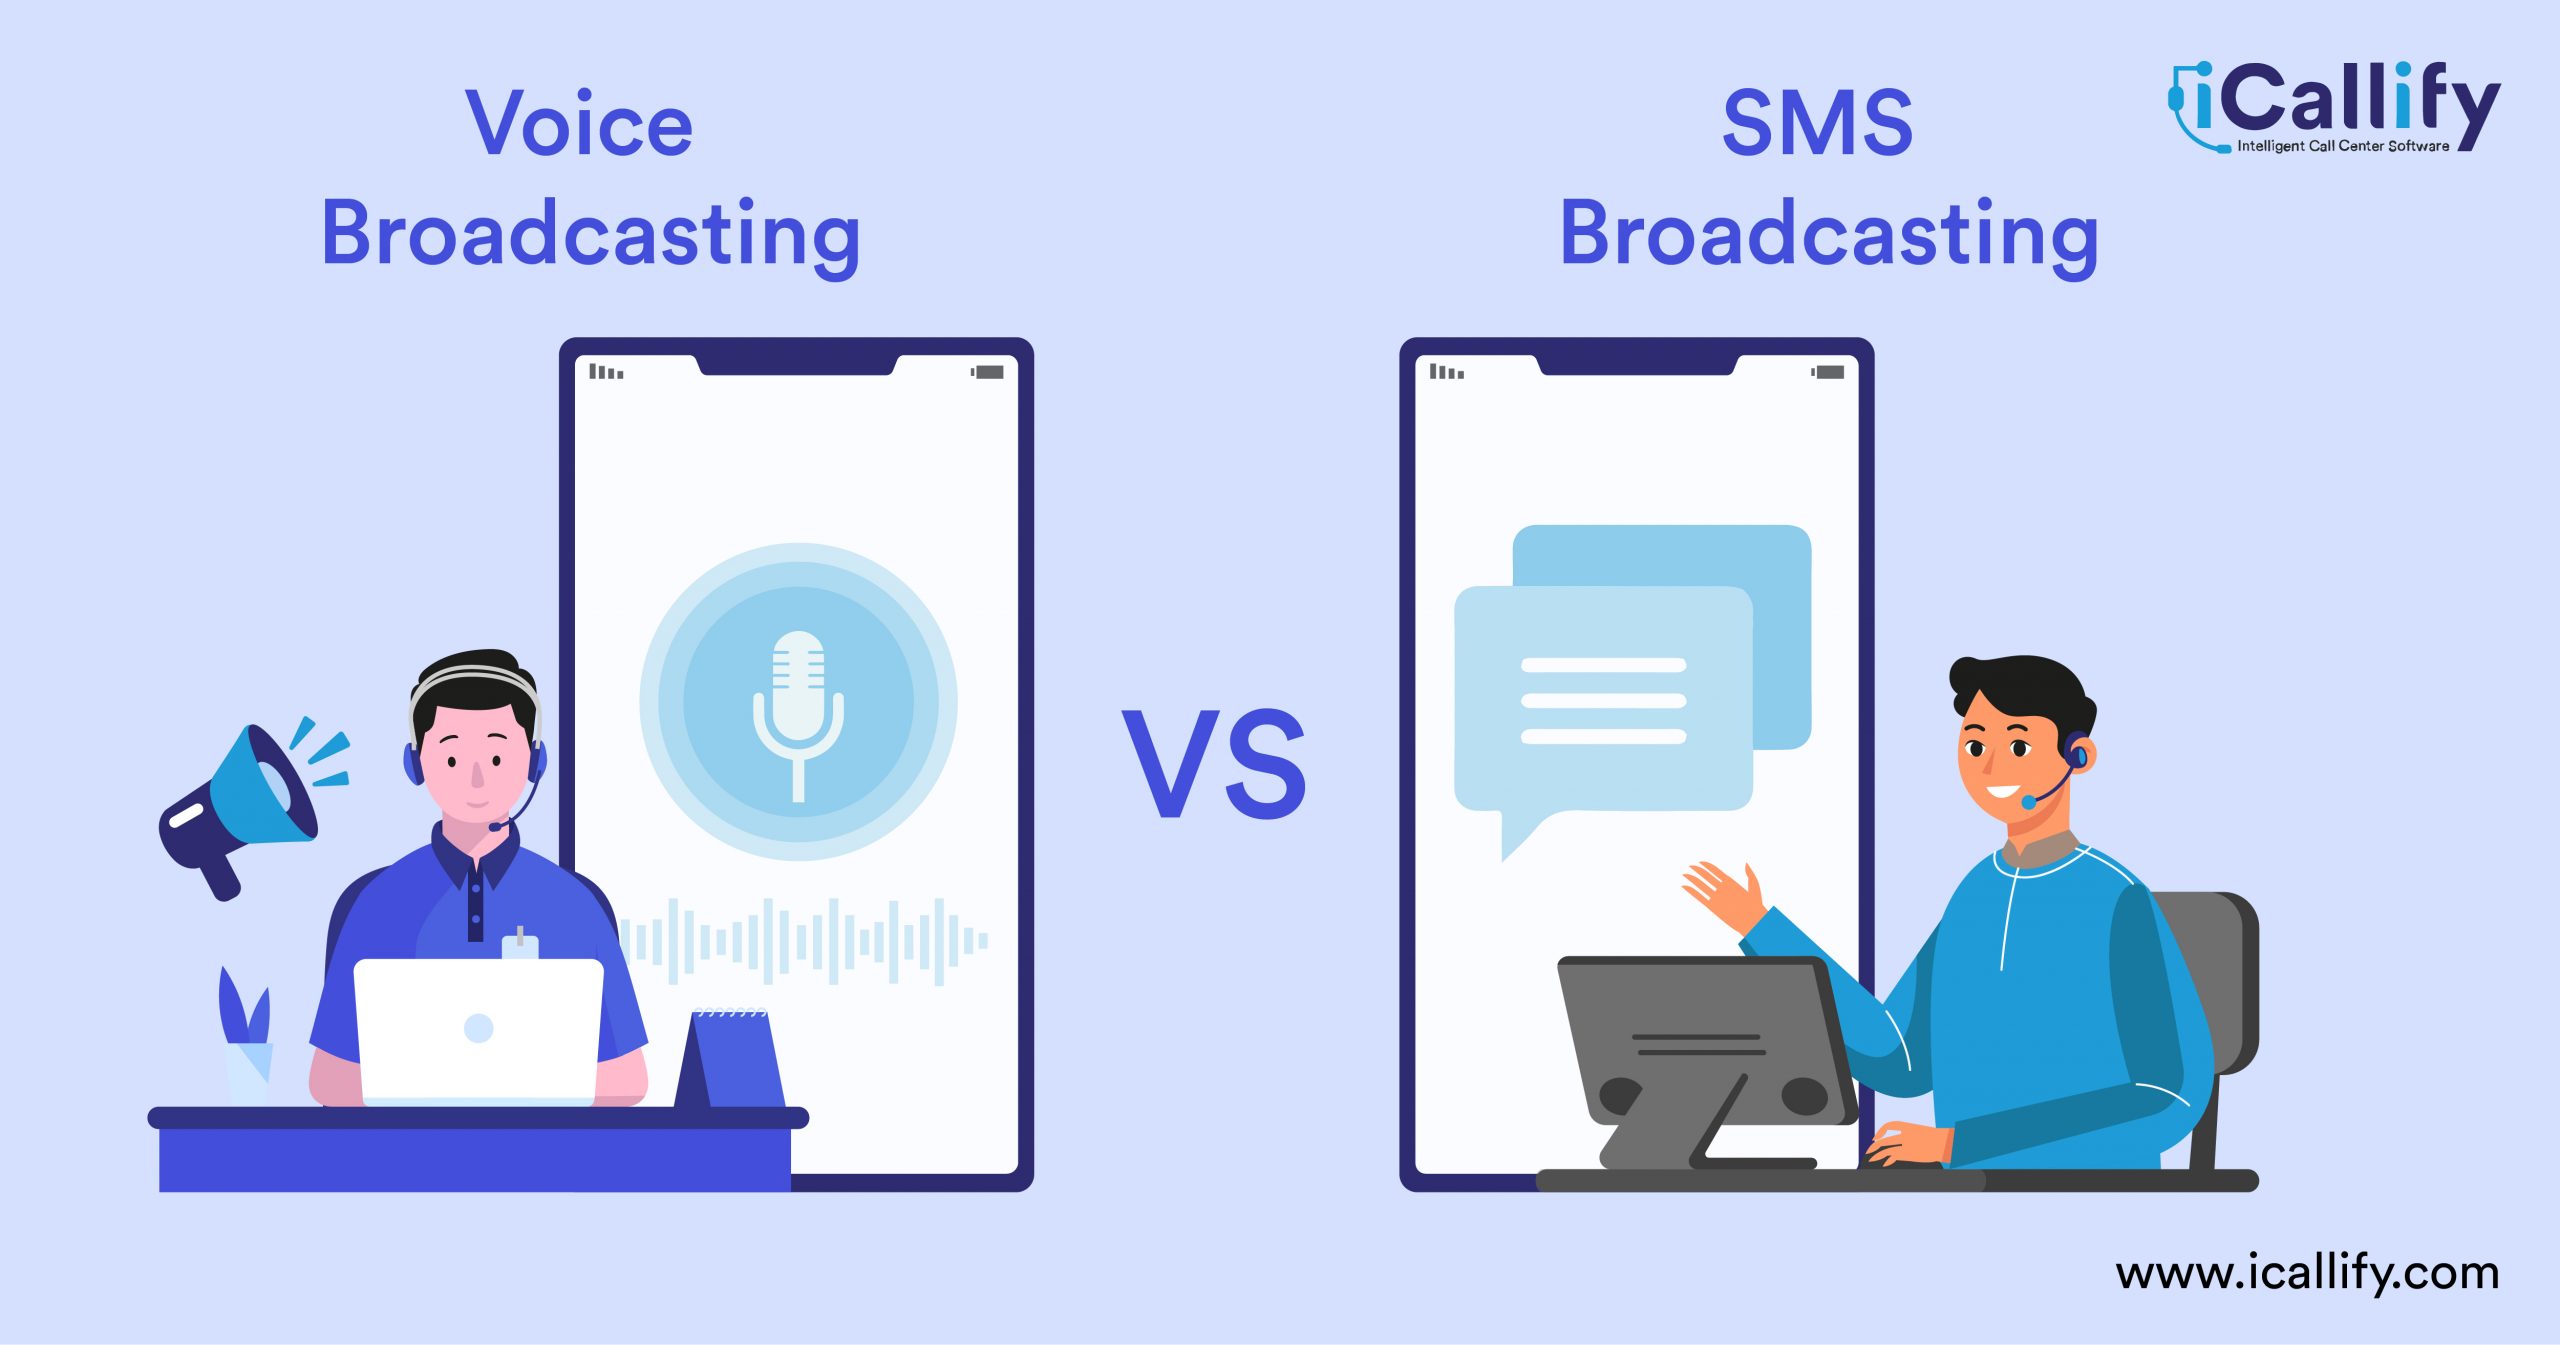 Voice Broadcasting vs. SMS Broadcasting